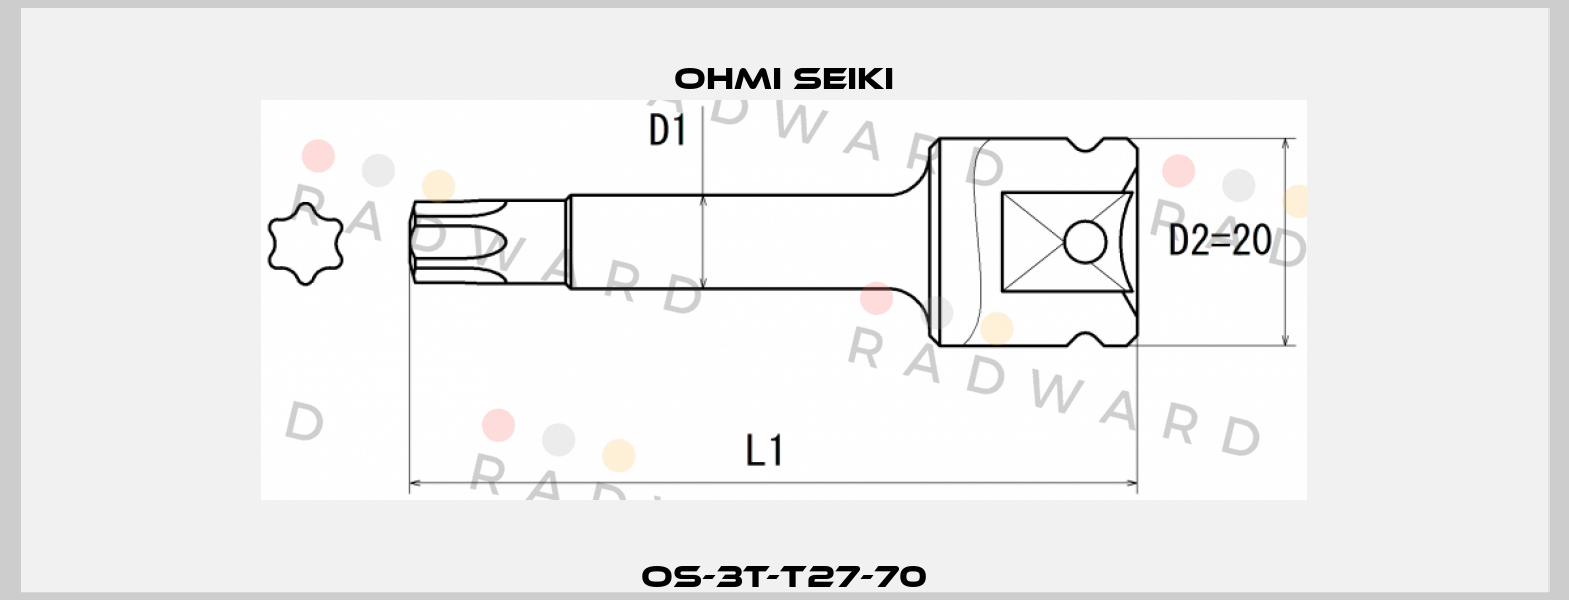 OS-3T-T27-70 Ohmi Seiki